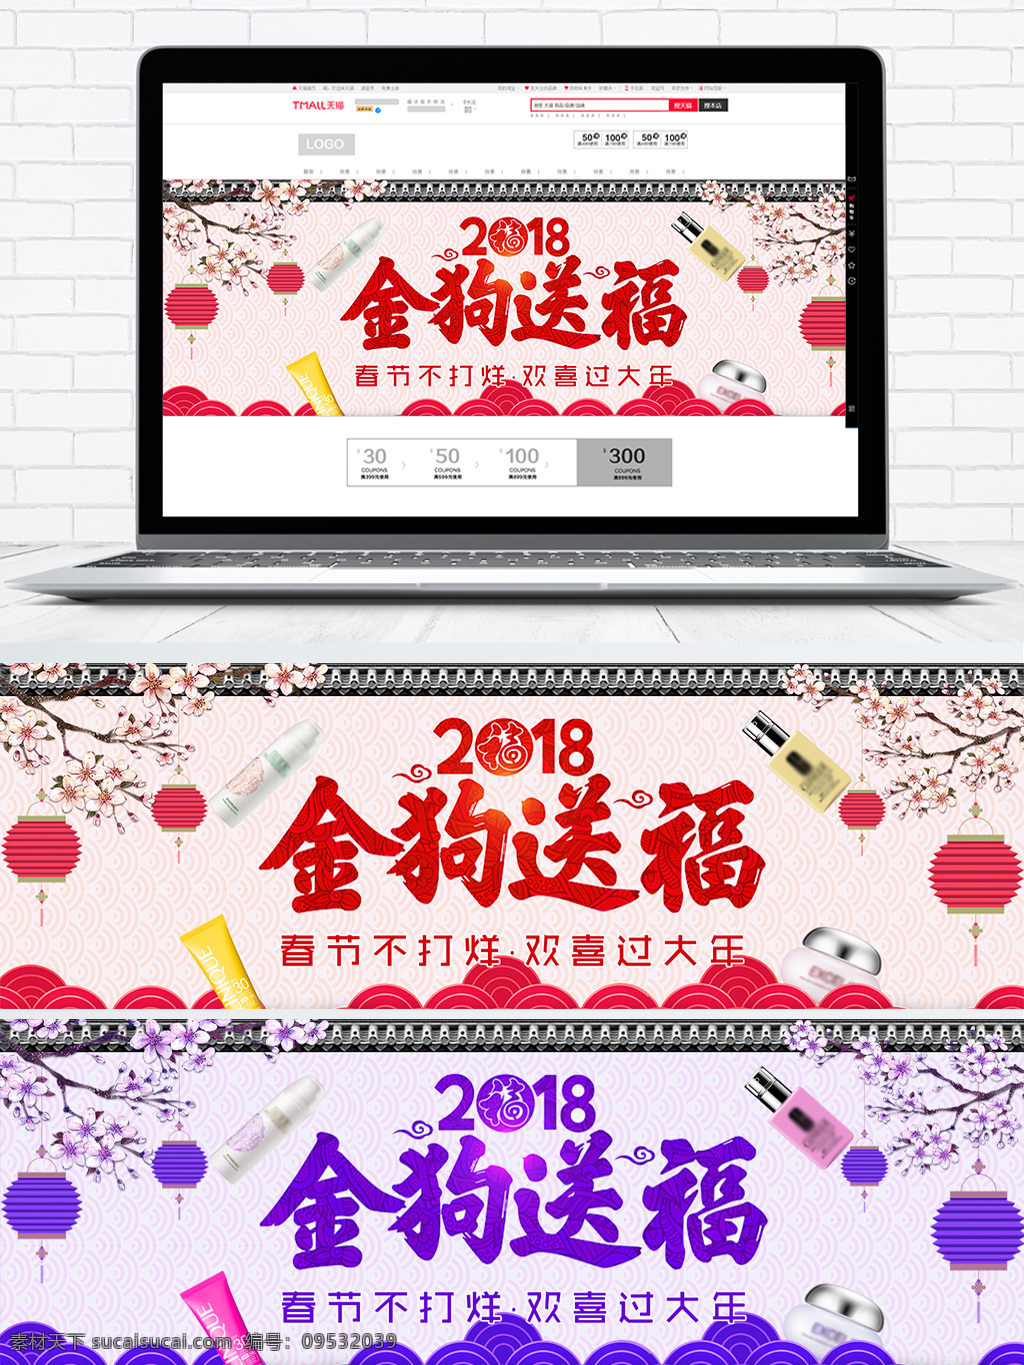 2018 金 狗 送 福 新春 海报 2018海报 春节不打烊 灯笼 化妆品 桃花 屋檐